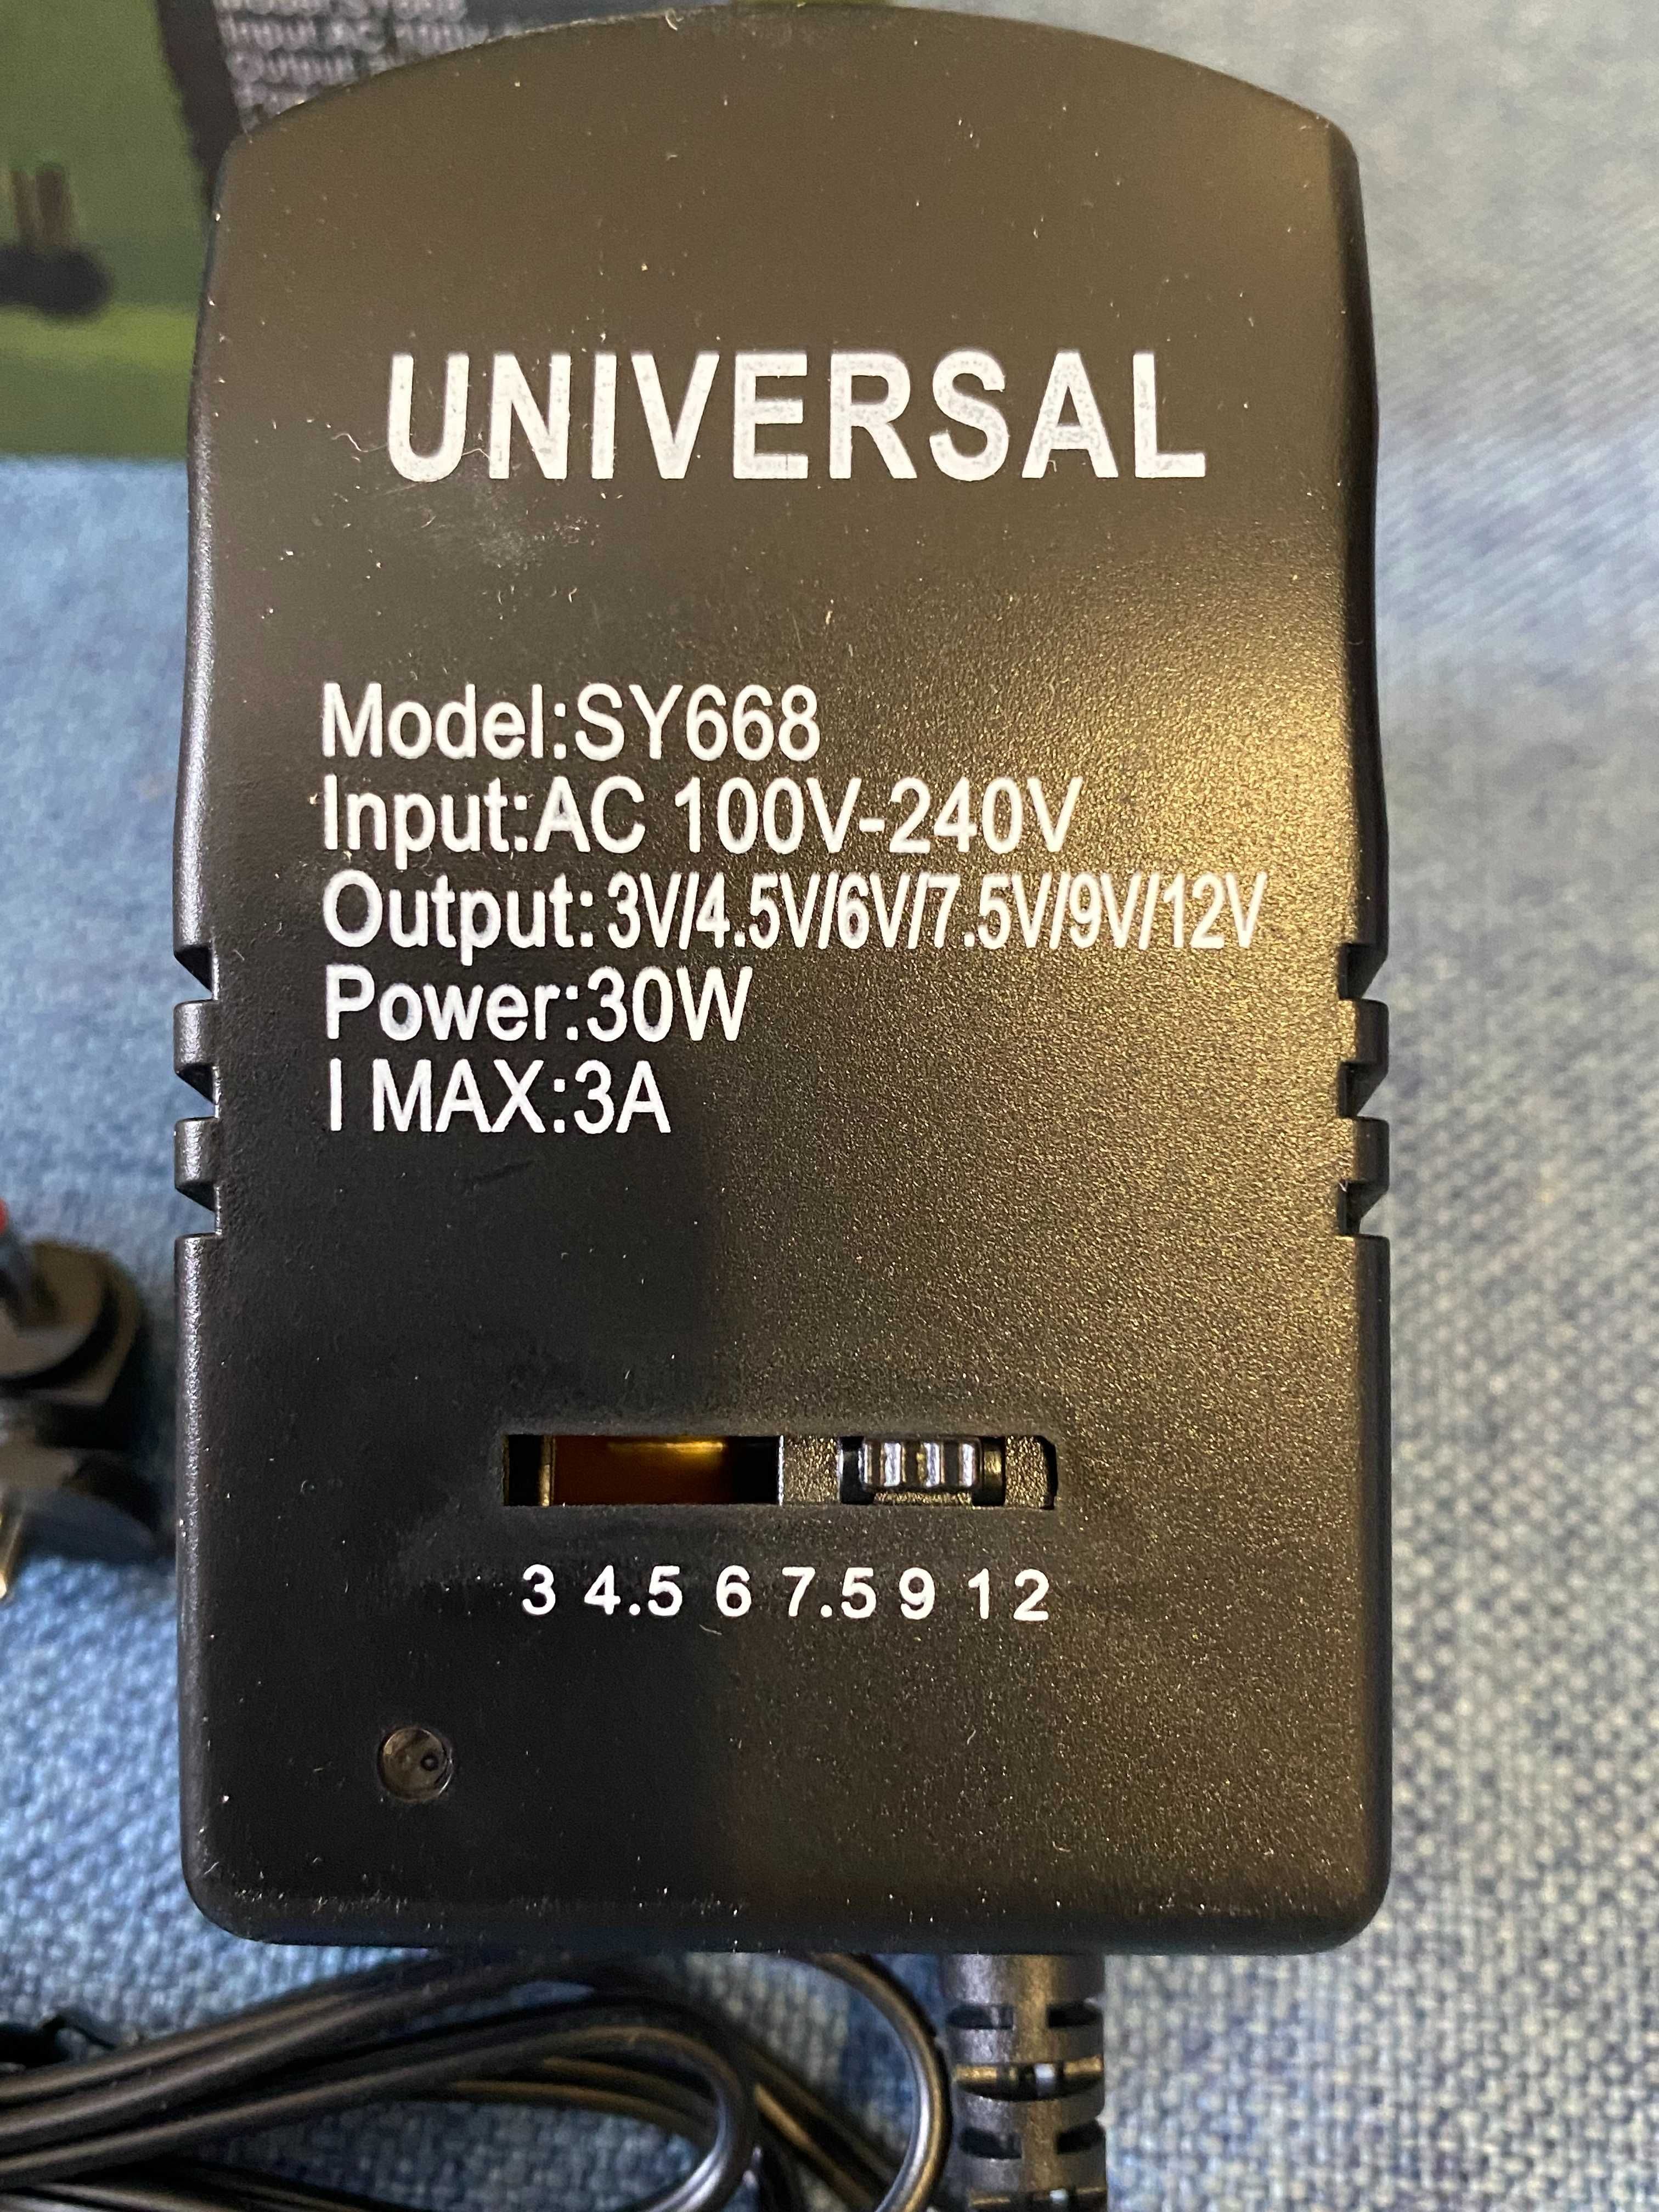 Универсальный блок питания Remote YC 668, 2.5А, 30Вт c переходниками